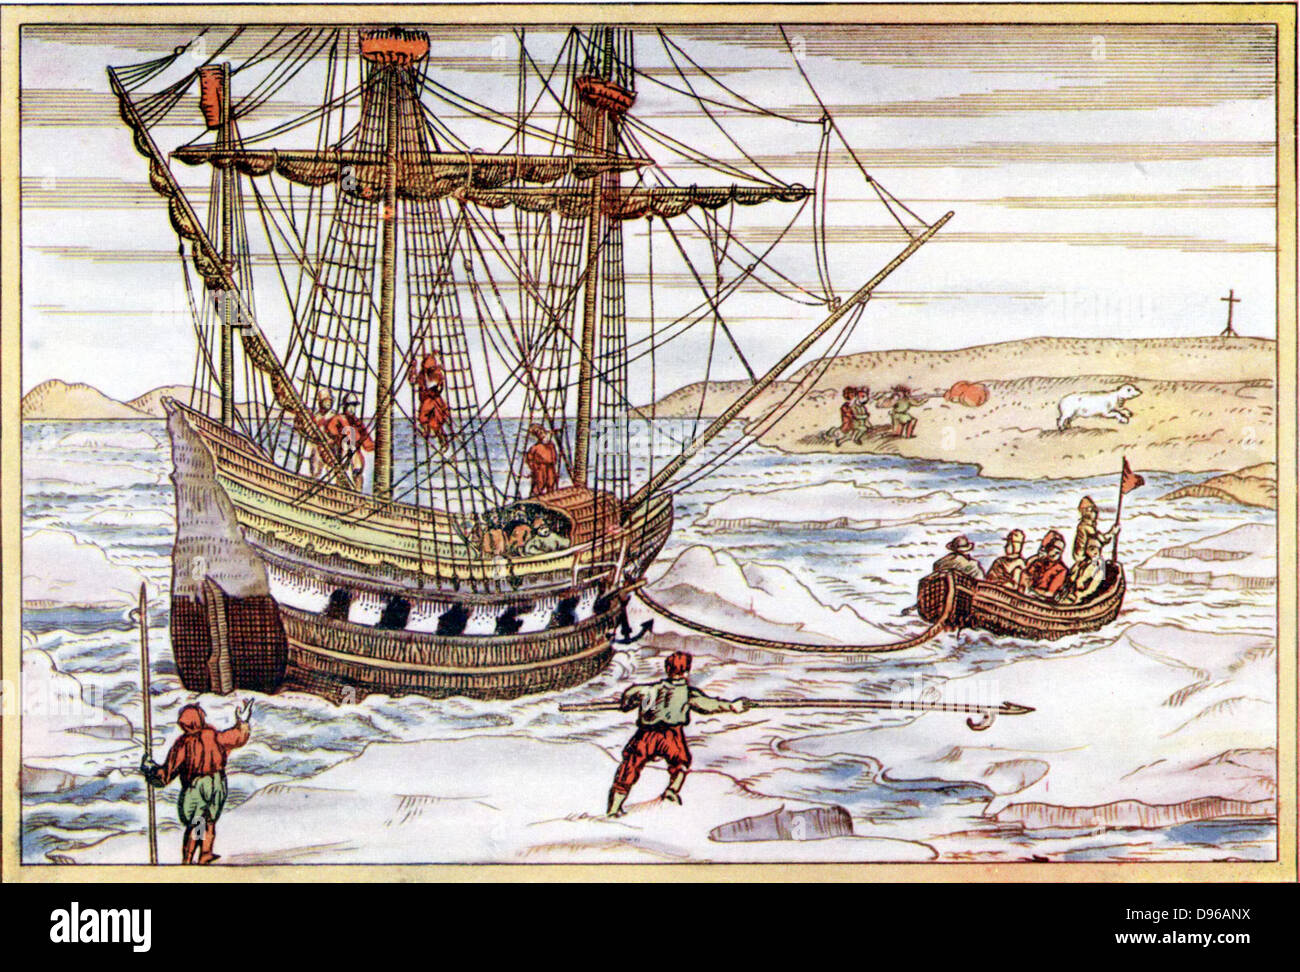 Willem Barents (d1597) Dutch Navigator qui a dirigé des expéditions dans la recherche du Passage du nord-est. Le navire de Barents parmi les glaces de l'Arctique. Illustration après Gerard de fan's de Barents" compte trois voyages, publié 1598 Banque D'Images